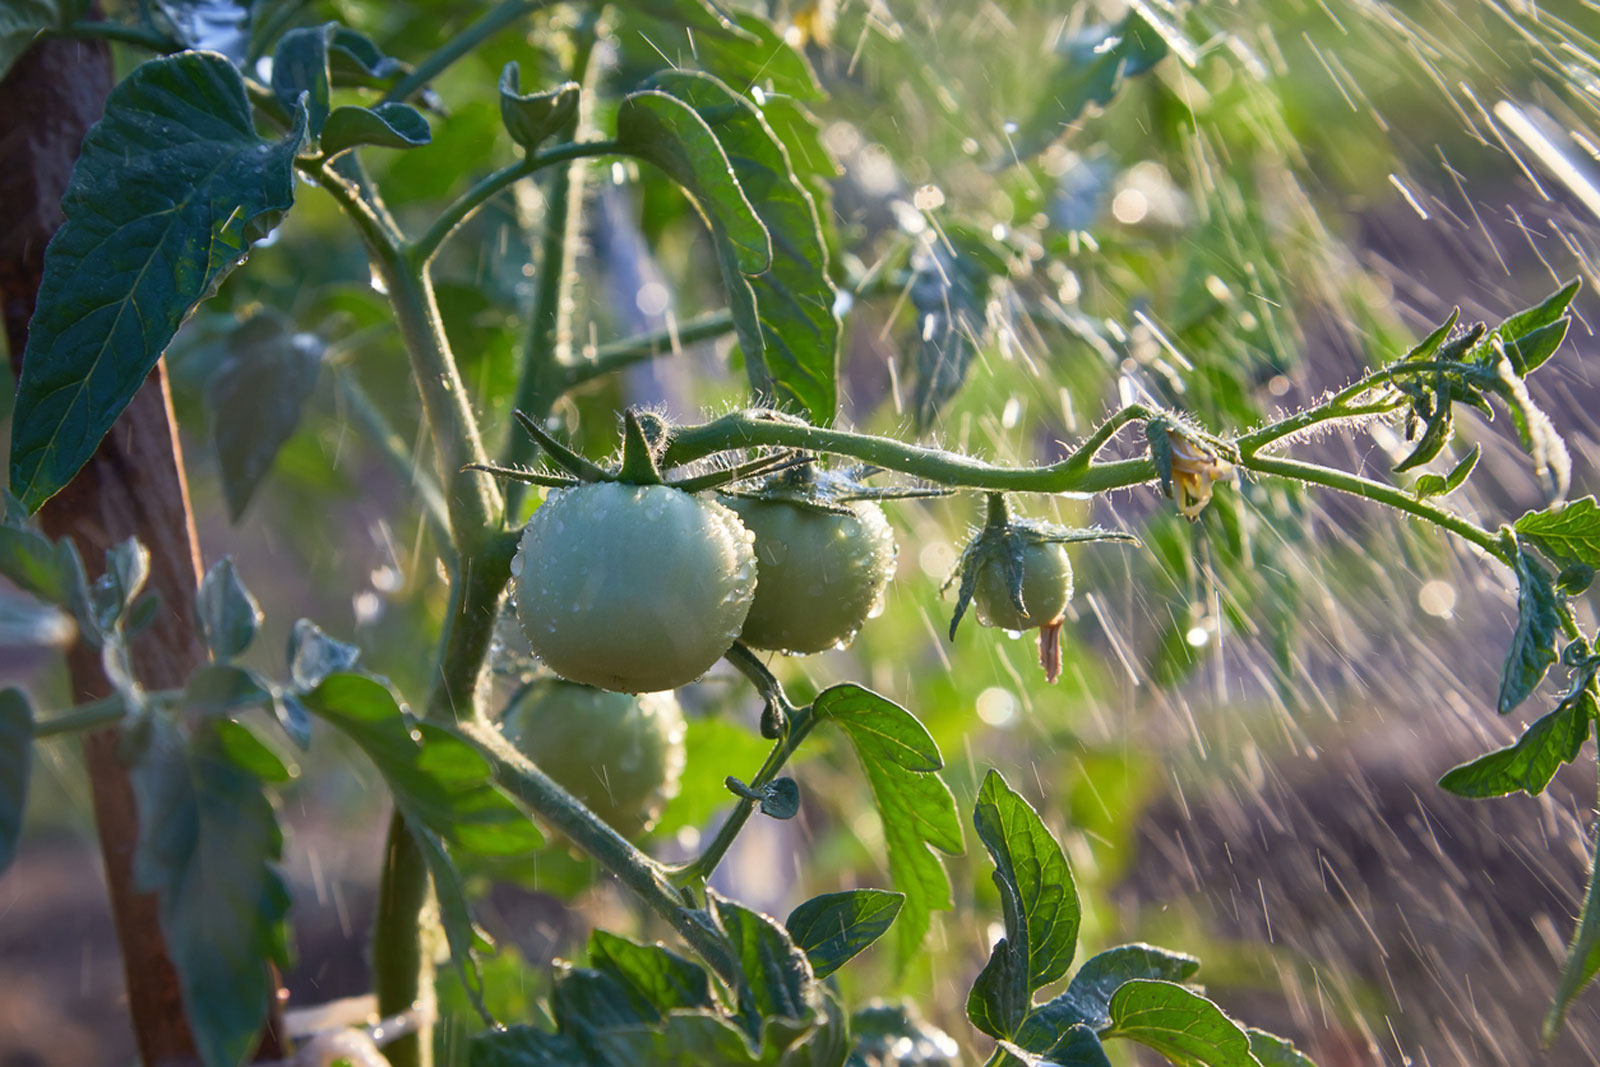 POMIDORŲ EKSPERTĖ IŠMOKĖ teisingai laistyti pomidorus – dabar jų derlius visiems daro įspūdį